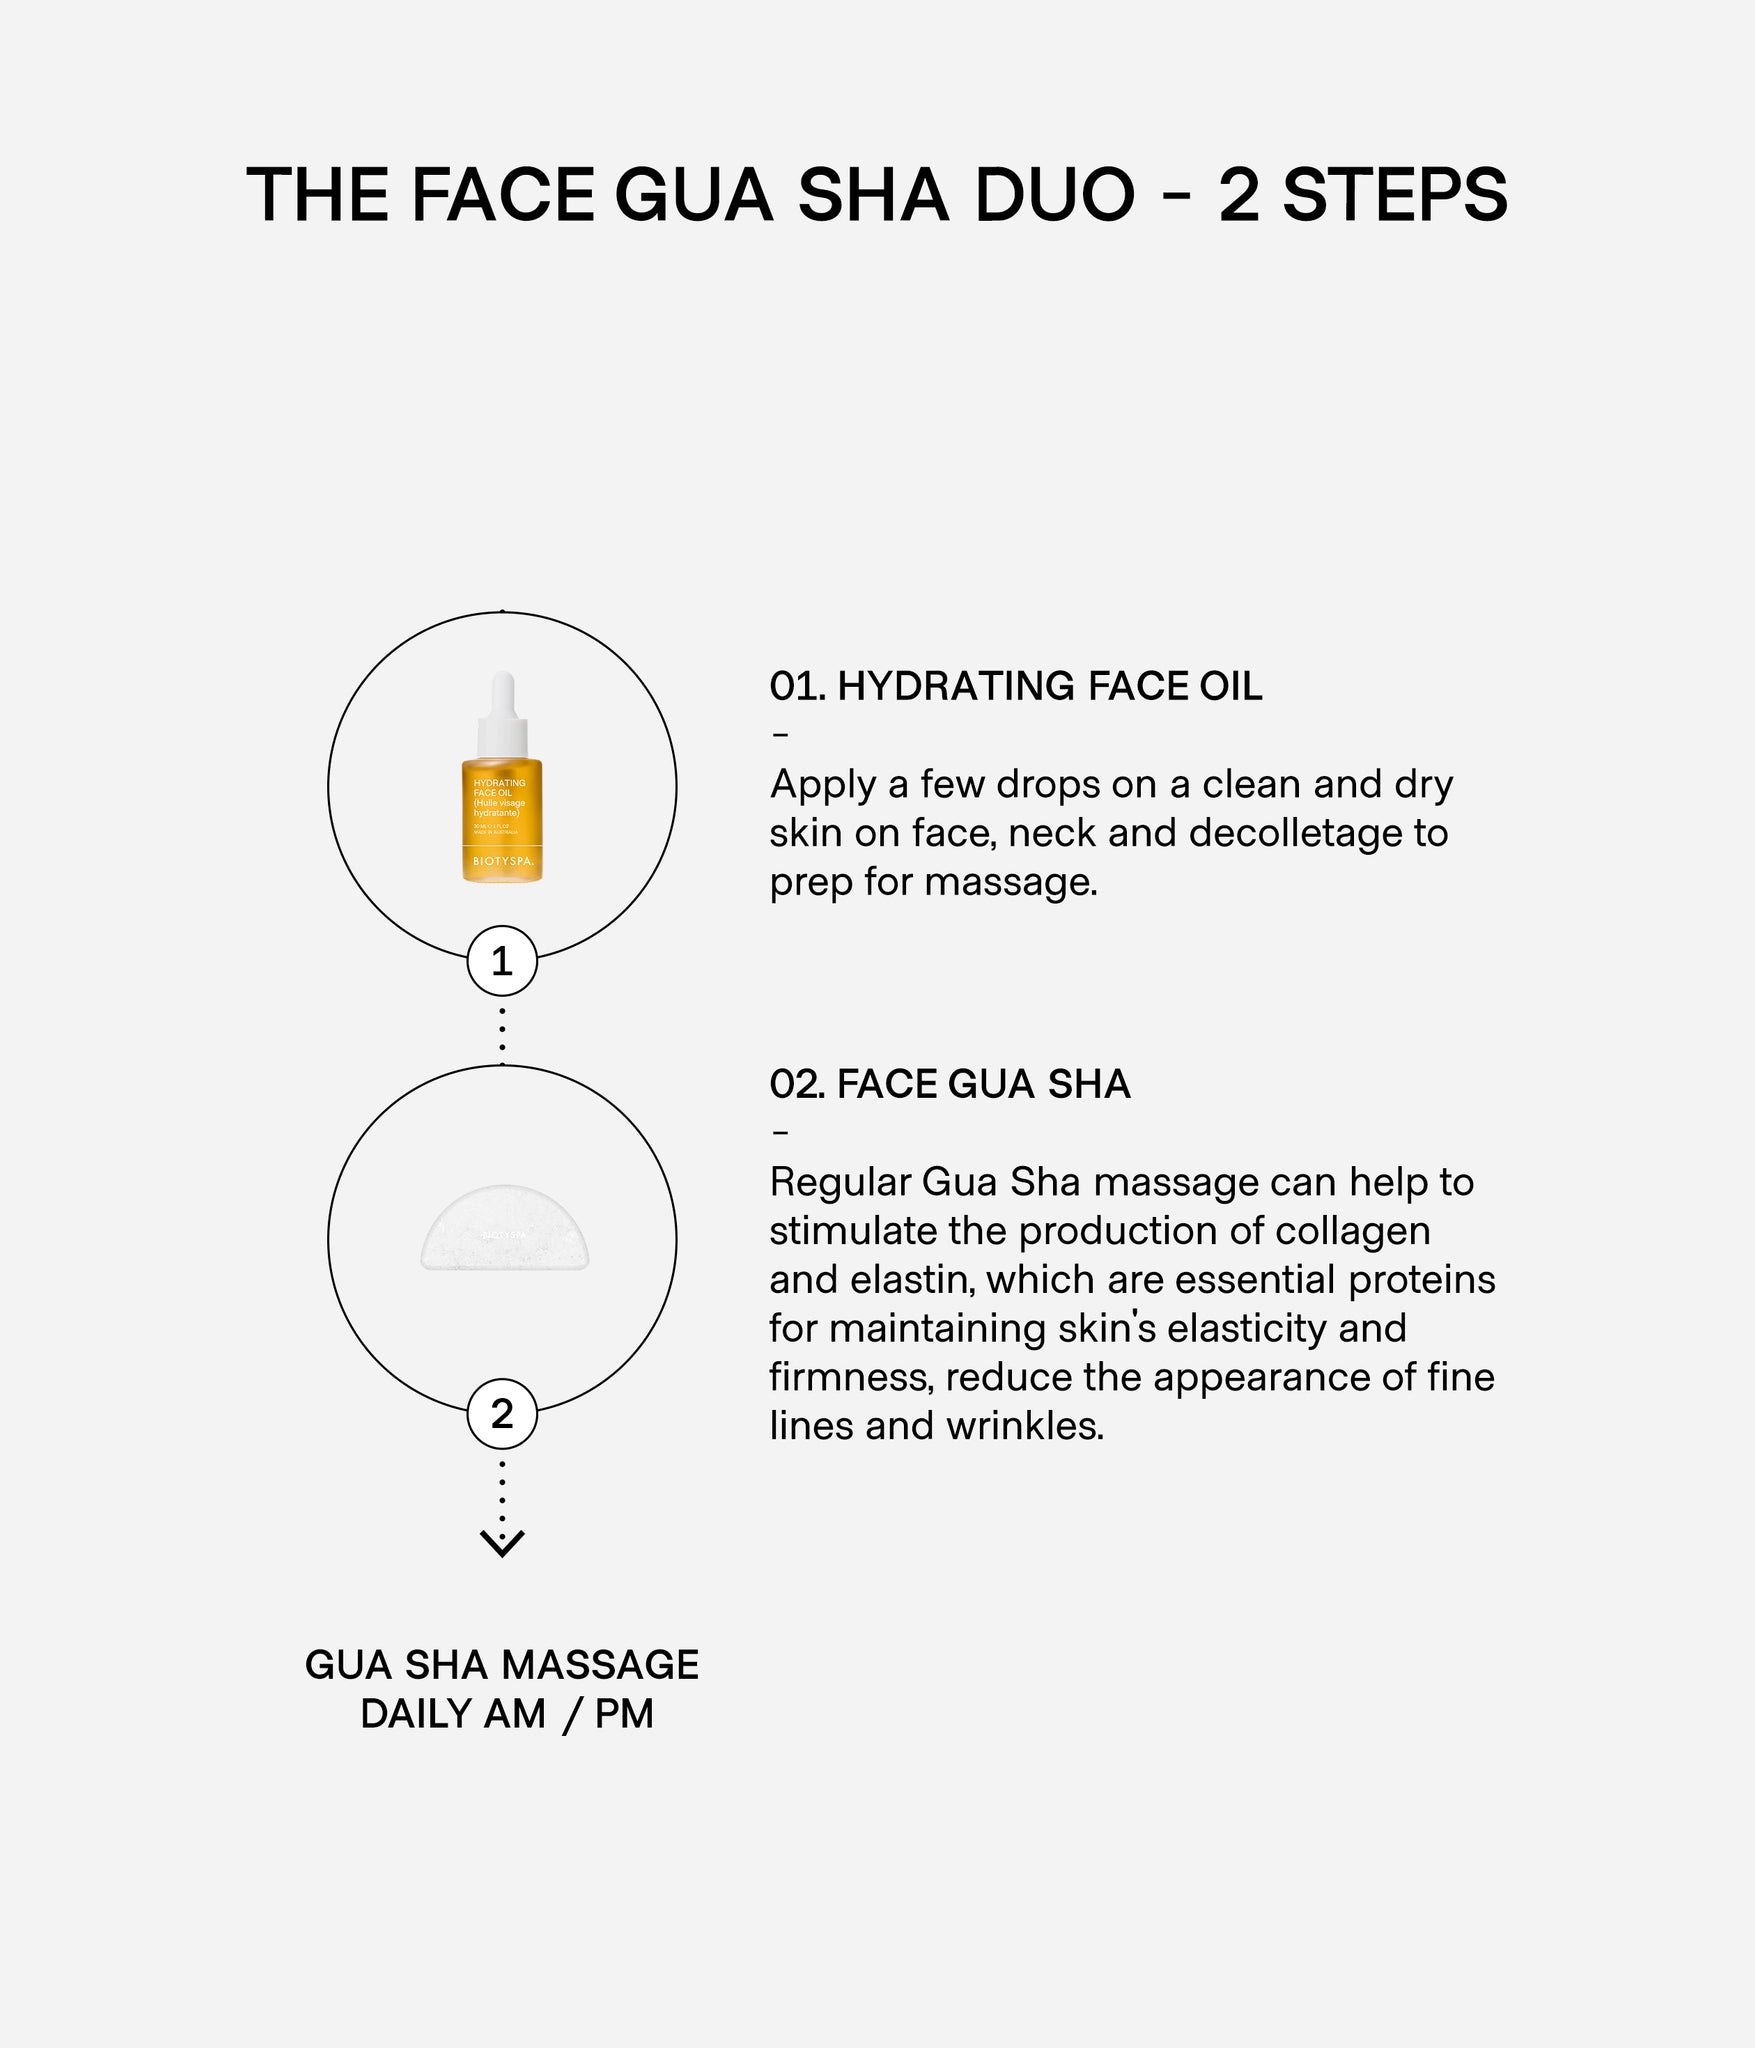 Face Gua Sha Duo